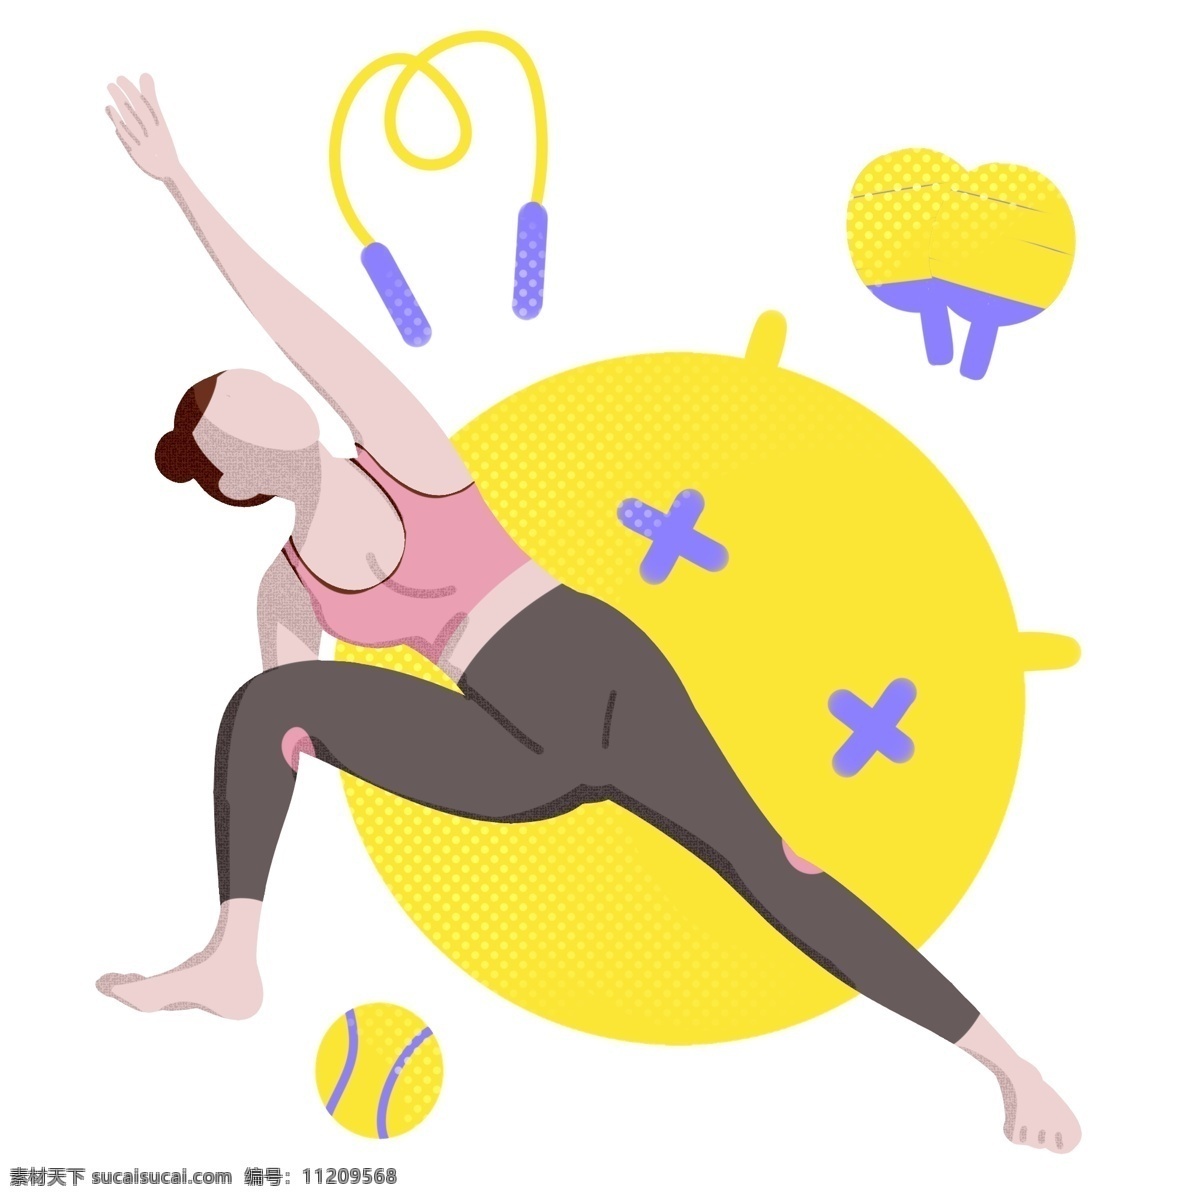 伸展 运动 女孩 插画 伸展运动 热身运动 健身的女孩 黄色跳绳 黄色瑜伽球 乒乓球拍 黄色棒球